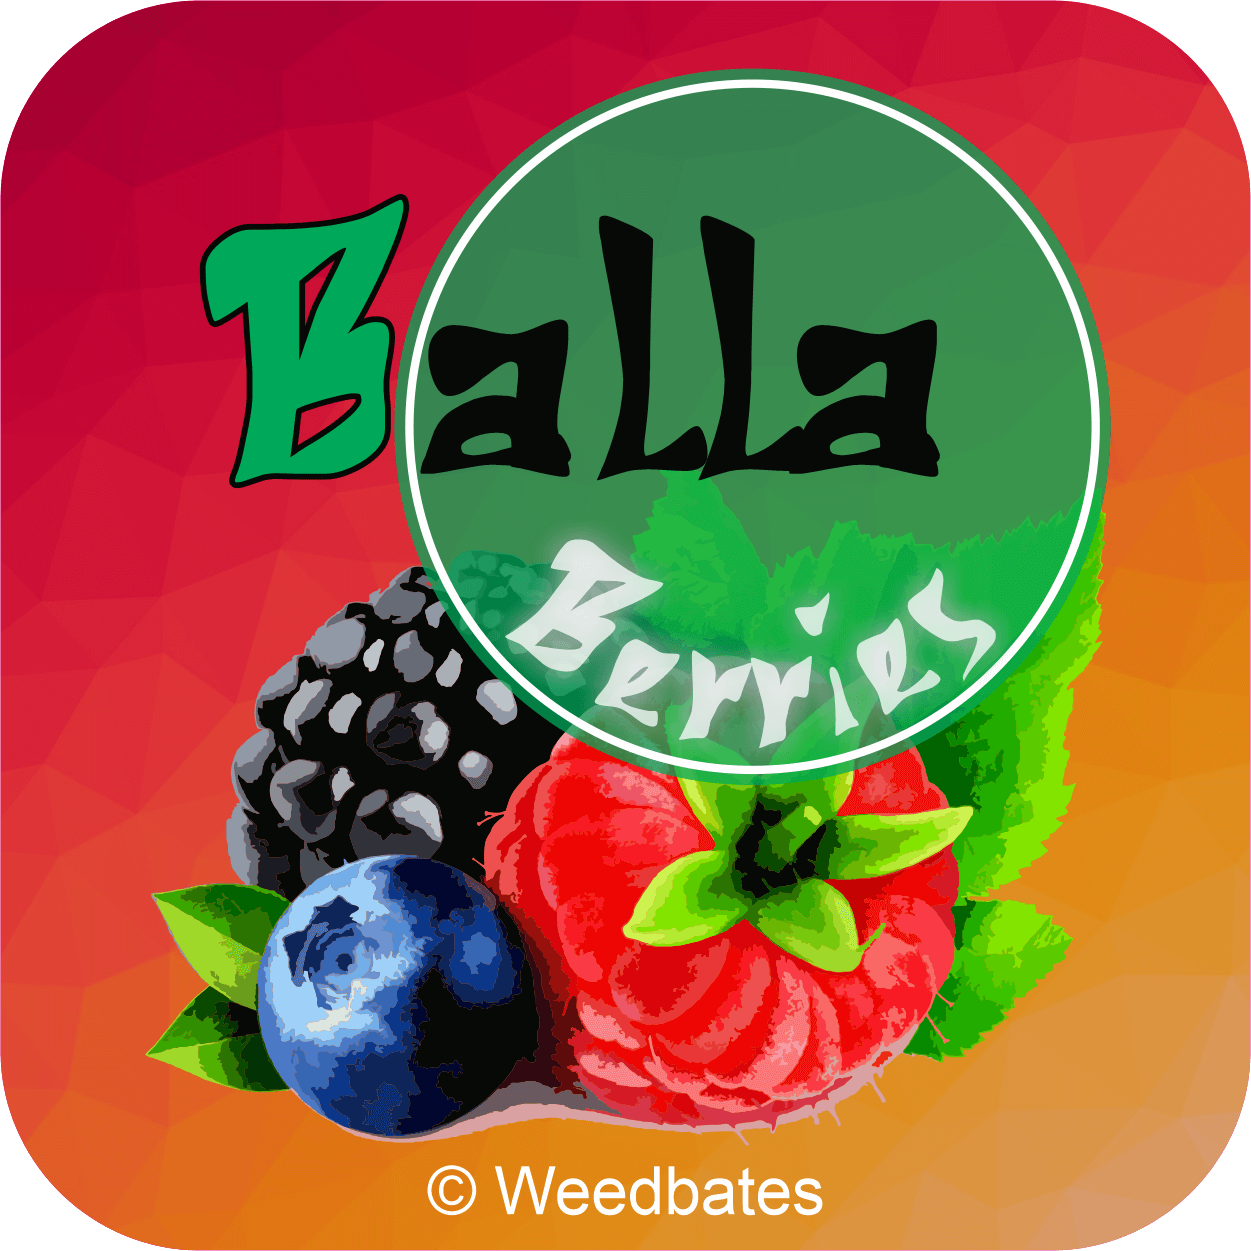 Balla Berries cannabis strain